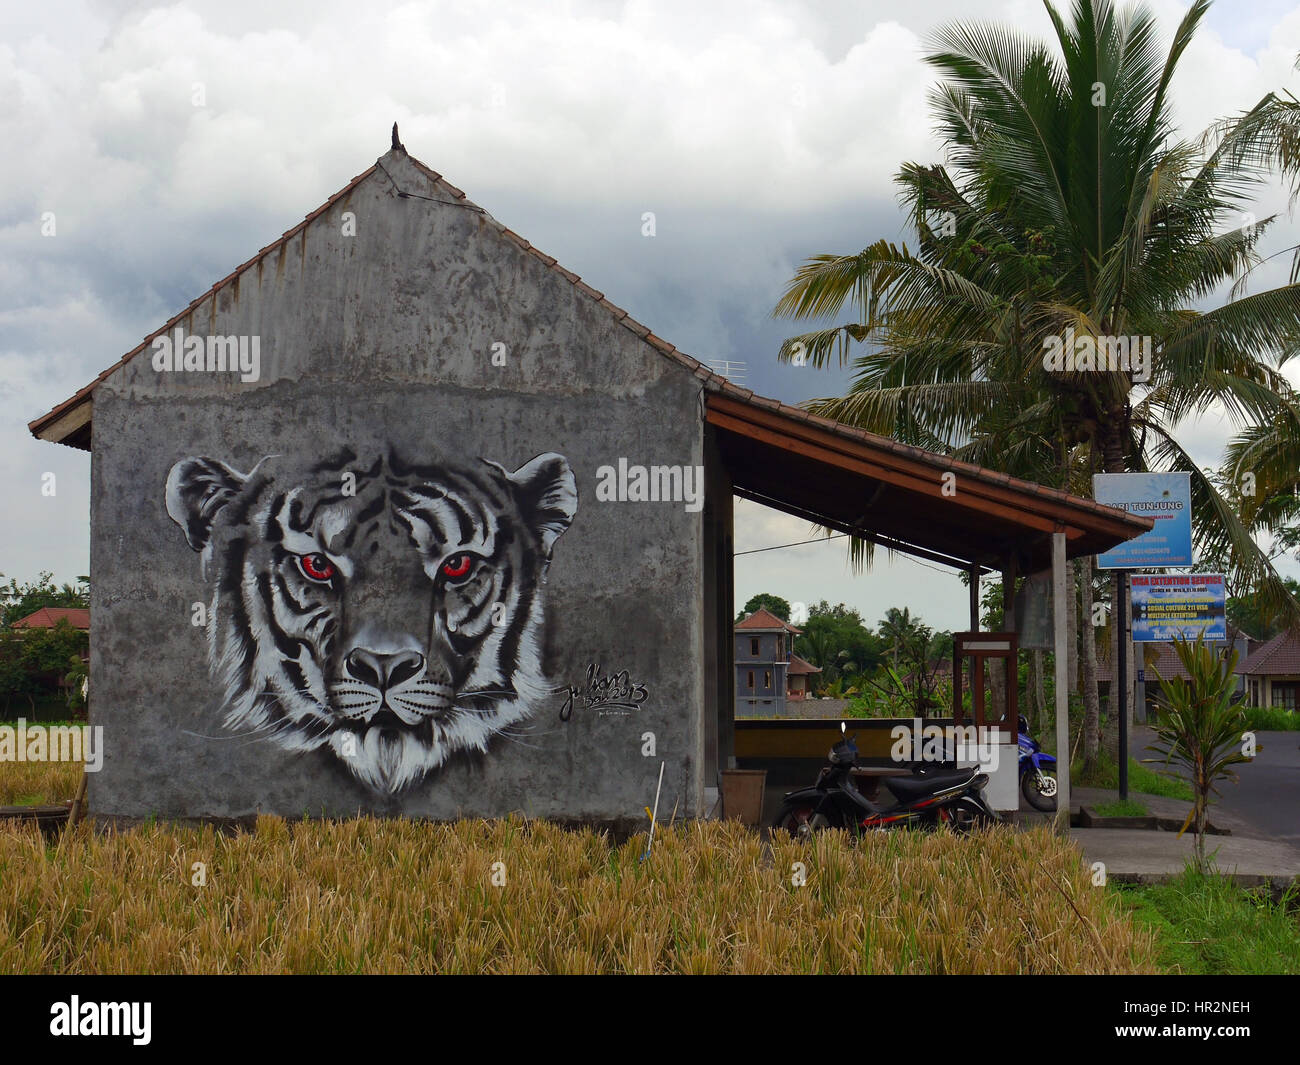 Tête de tigre - graffiti sur le mur par Julian Vogel, street art. Bali, Indonésie Banque D'Images